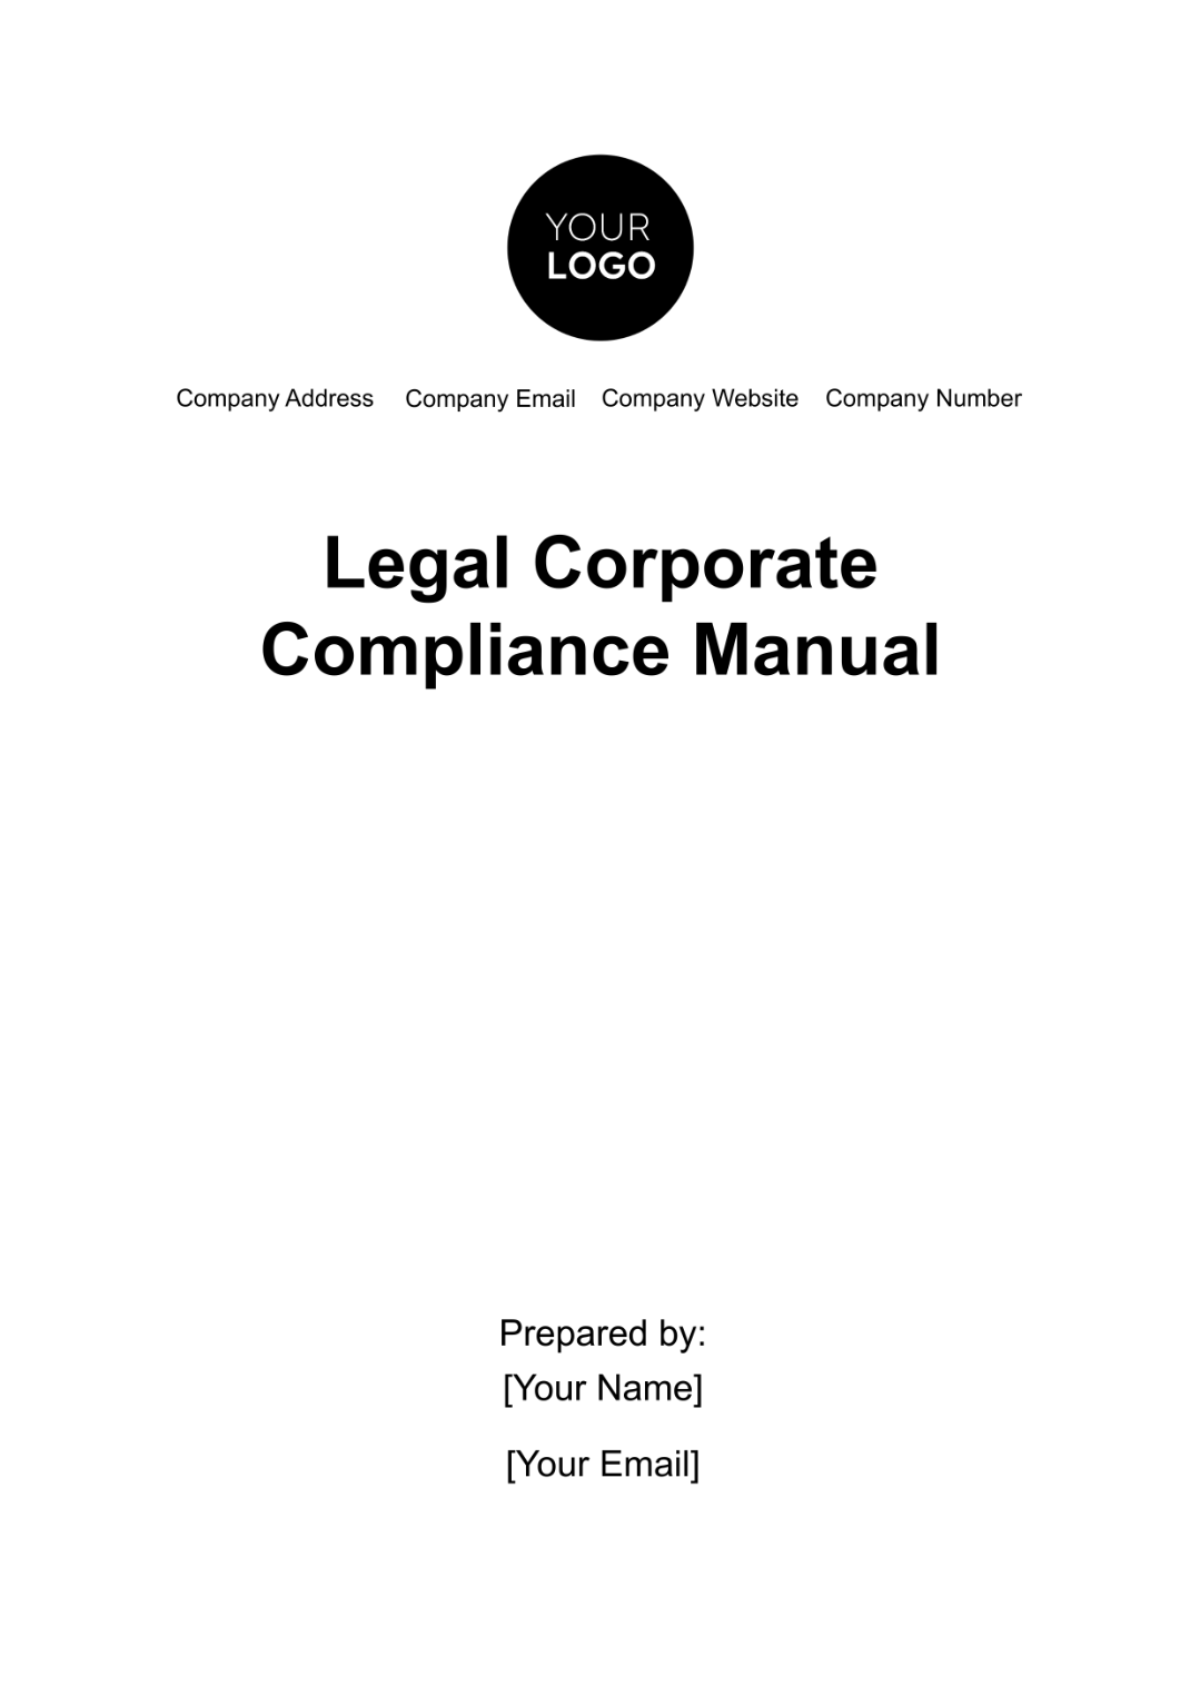 Legal Corporate Compliance Manual Template